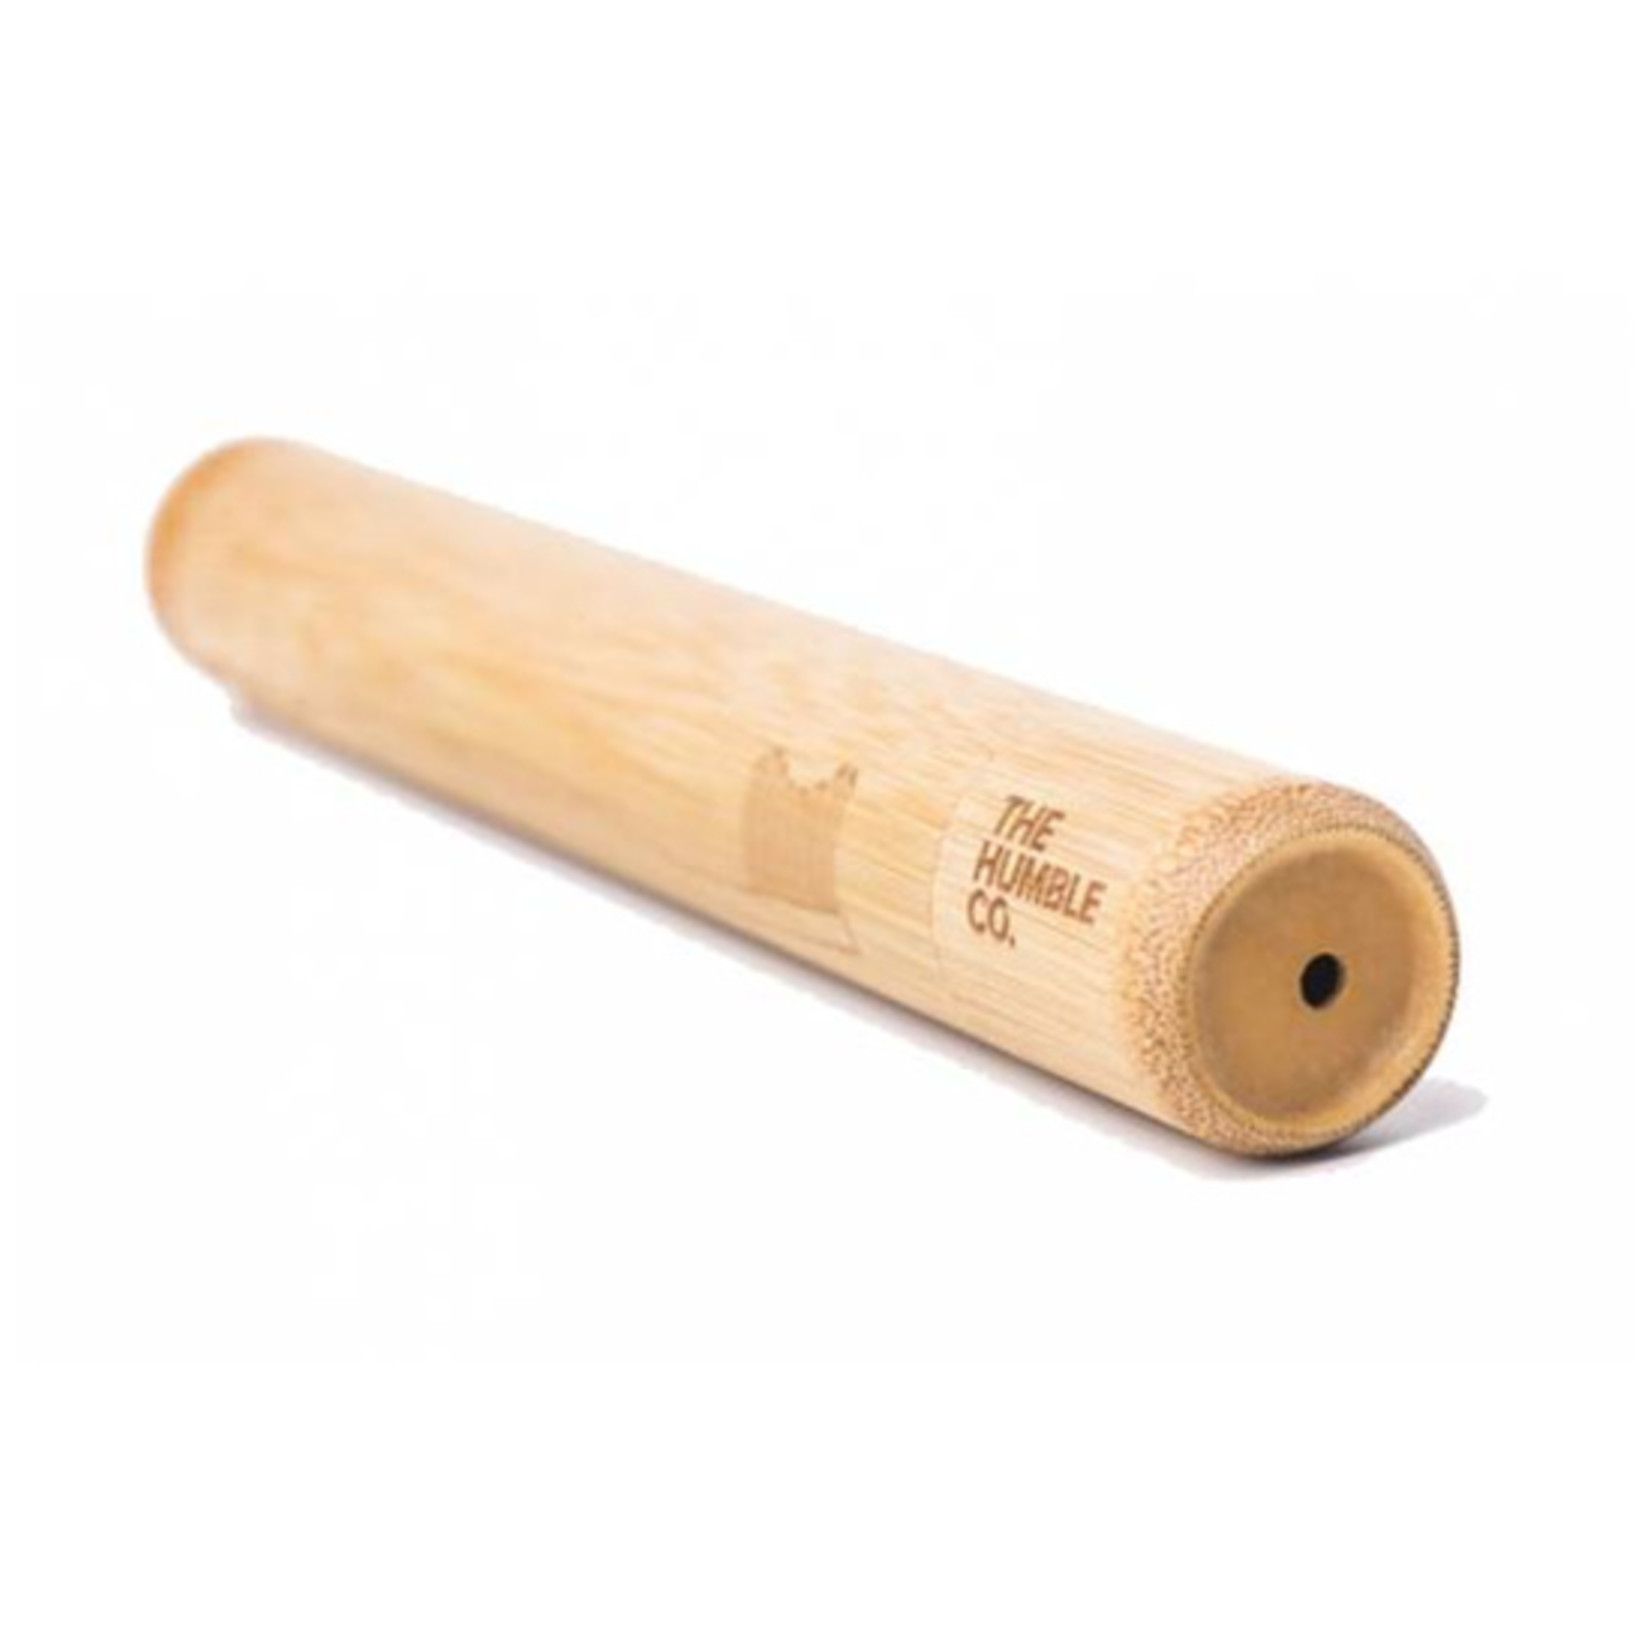 The Humble Co. Humble Brush bamboe tandenborstel koker KIDS 15cm